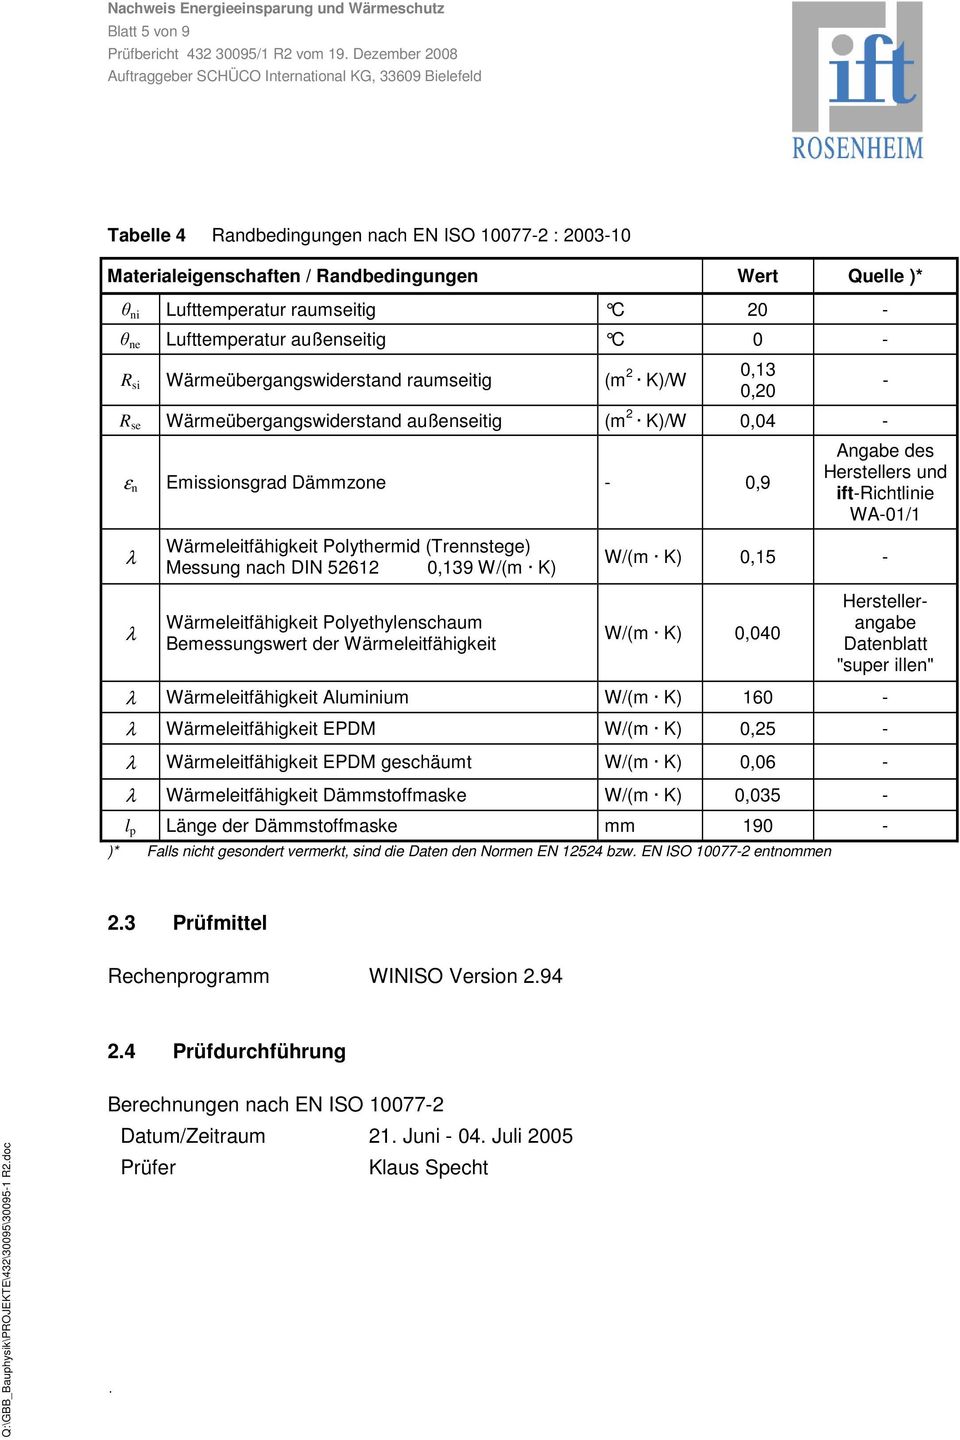 (Trennstege) Messung nach DIN 52612 0,139 W/(m K) Wärmeleitfähigkeit Polyethylenschaum Bemessungswert der Wärmeleitfähigkeit - Angabe des Herstellers und ift-richtlinie WA-01/1 W/(m K) 0,15 - W/(m K)